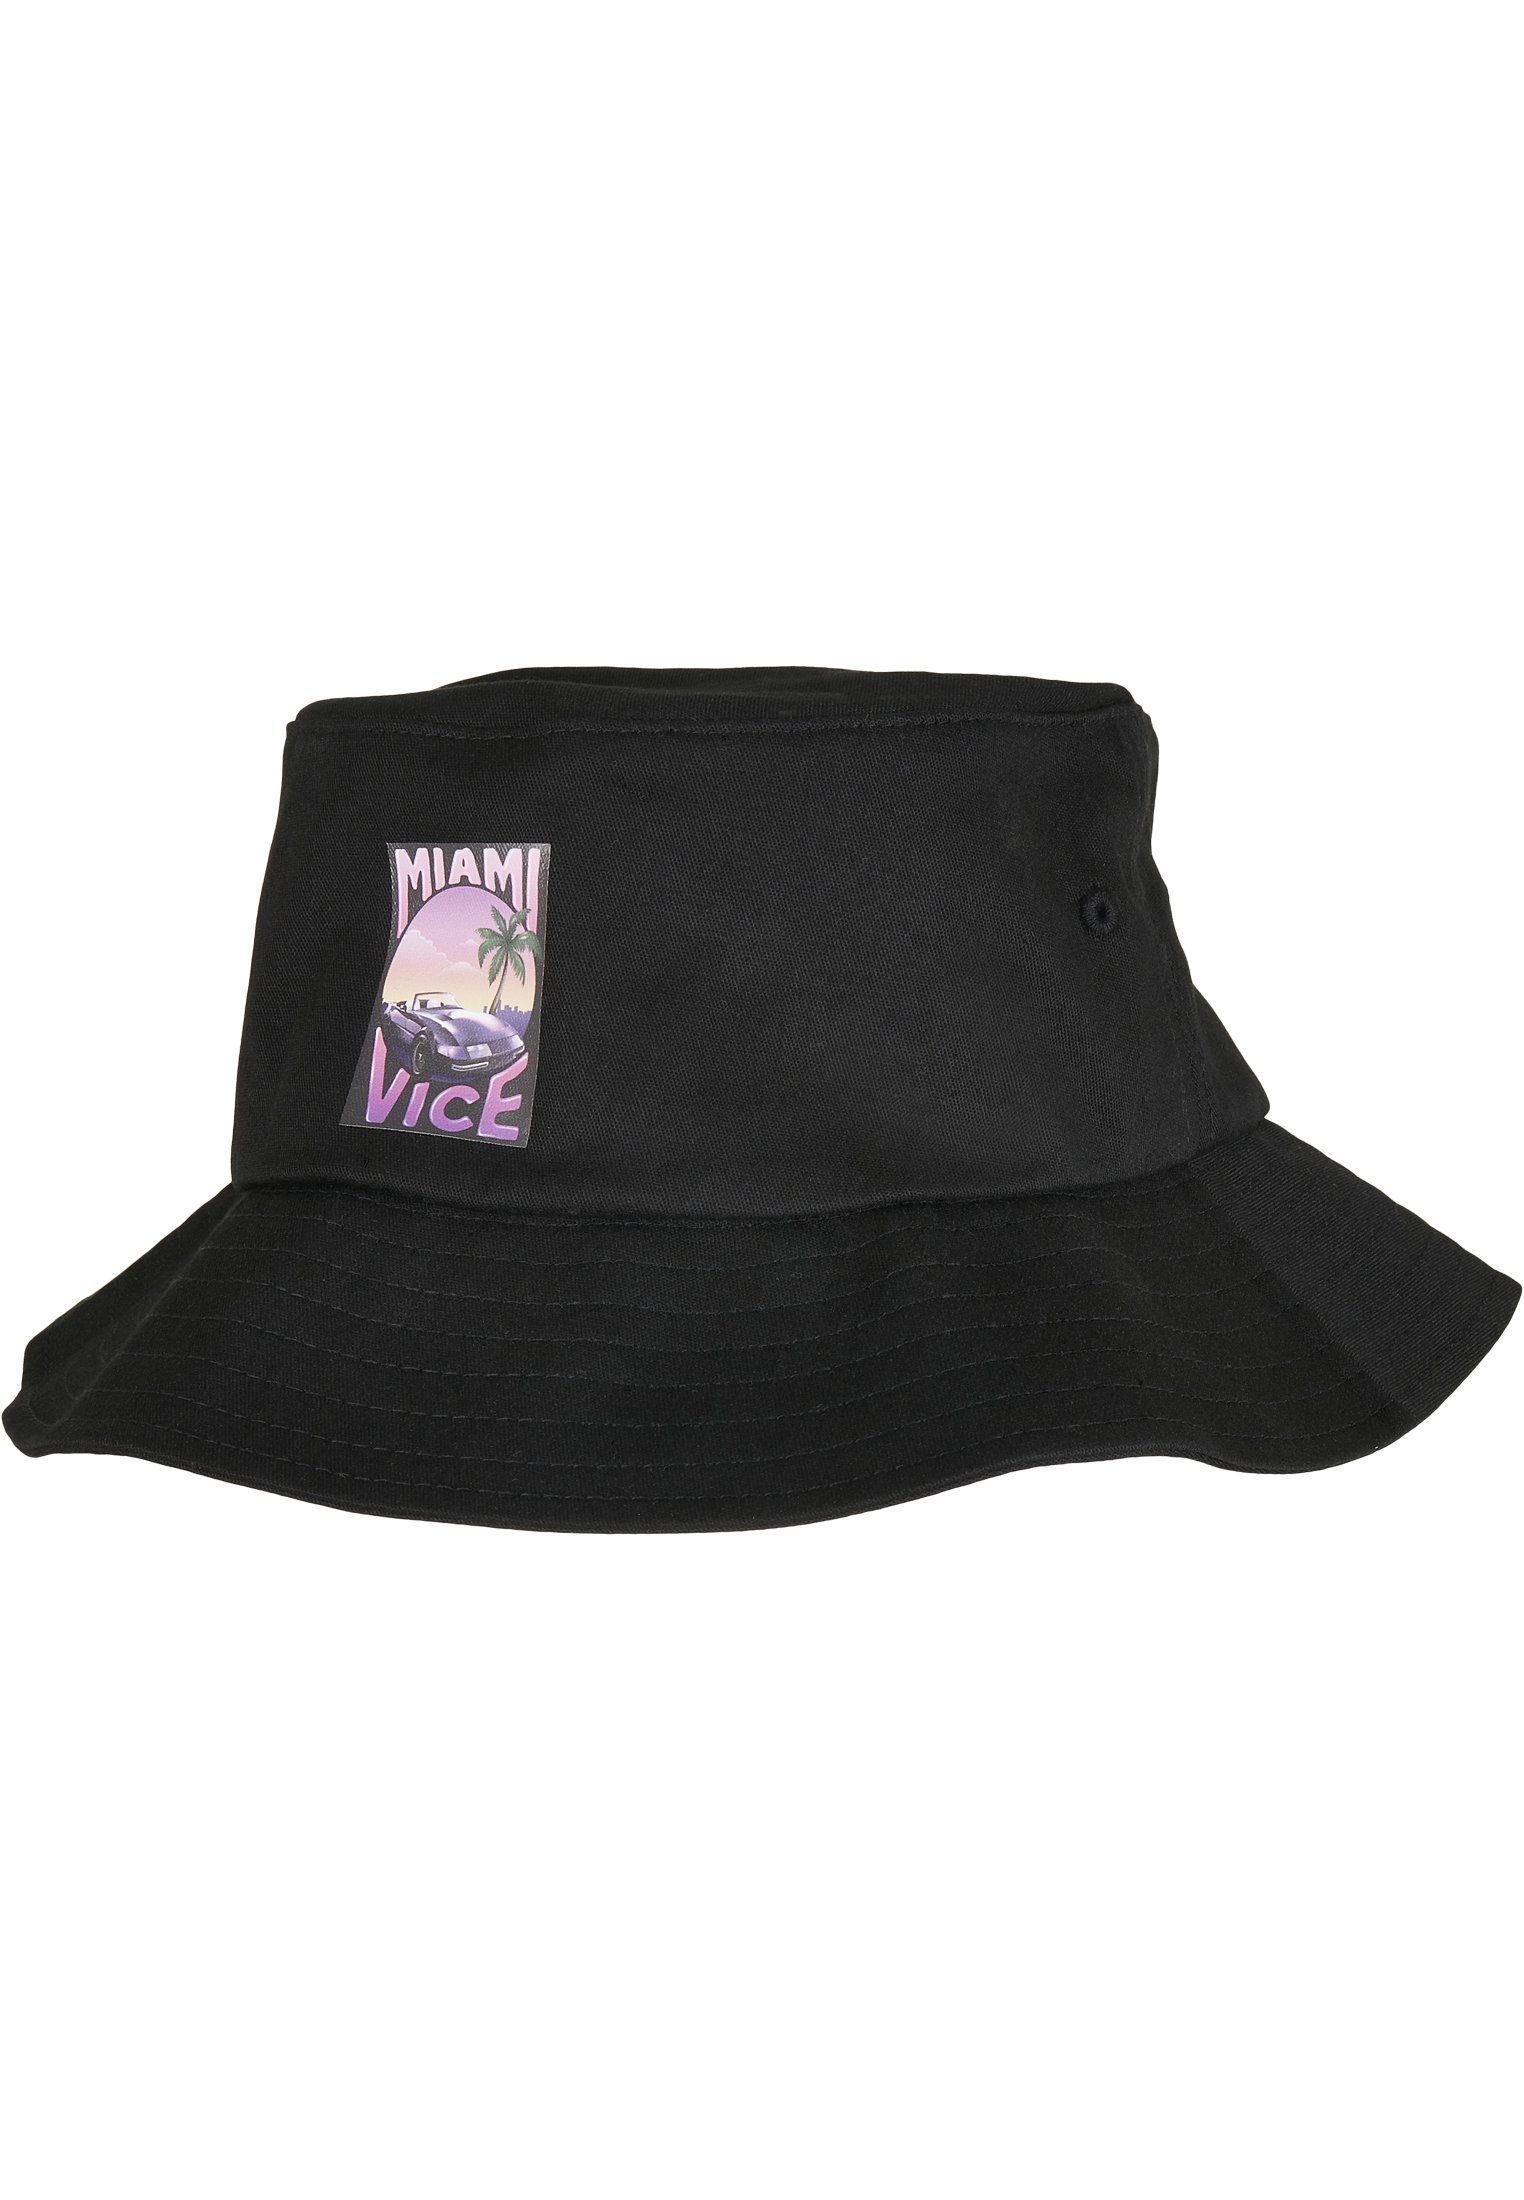 Hat Vice Bucket Cap Merchcode Print Bucket Hat Miami Flex